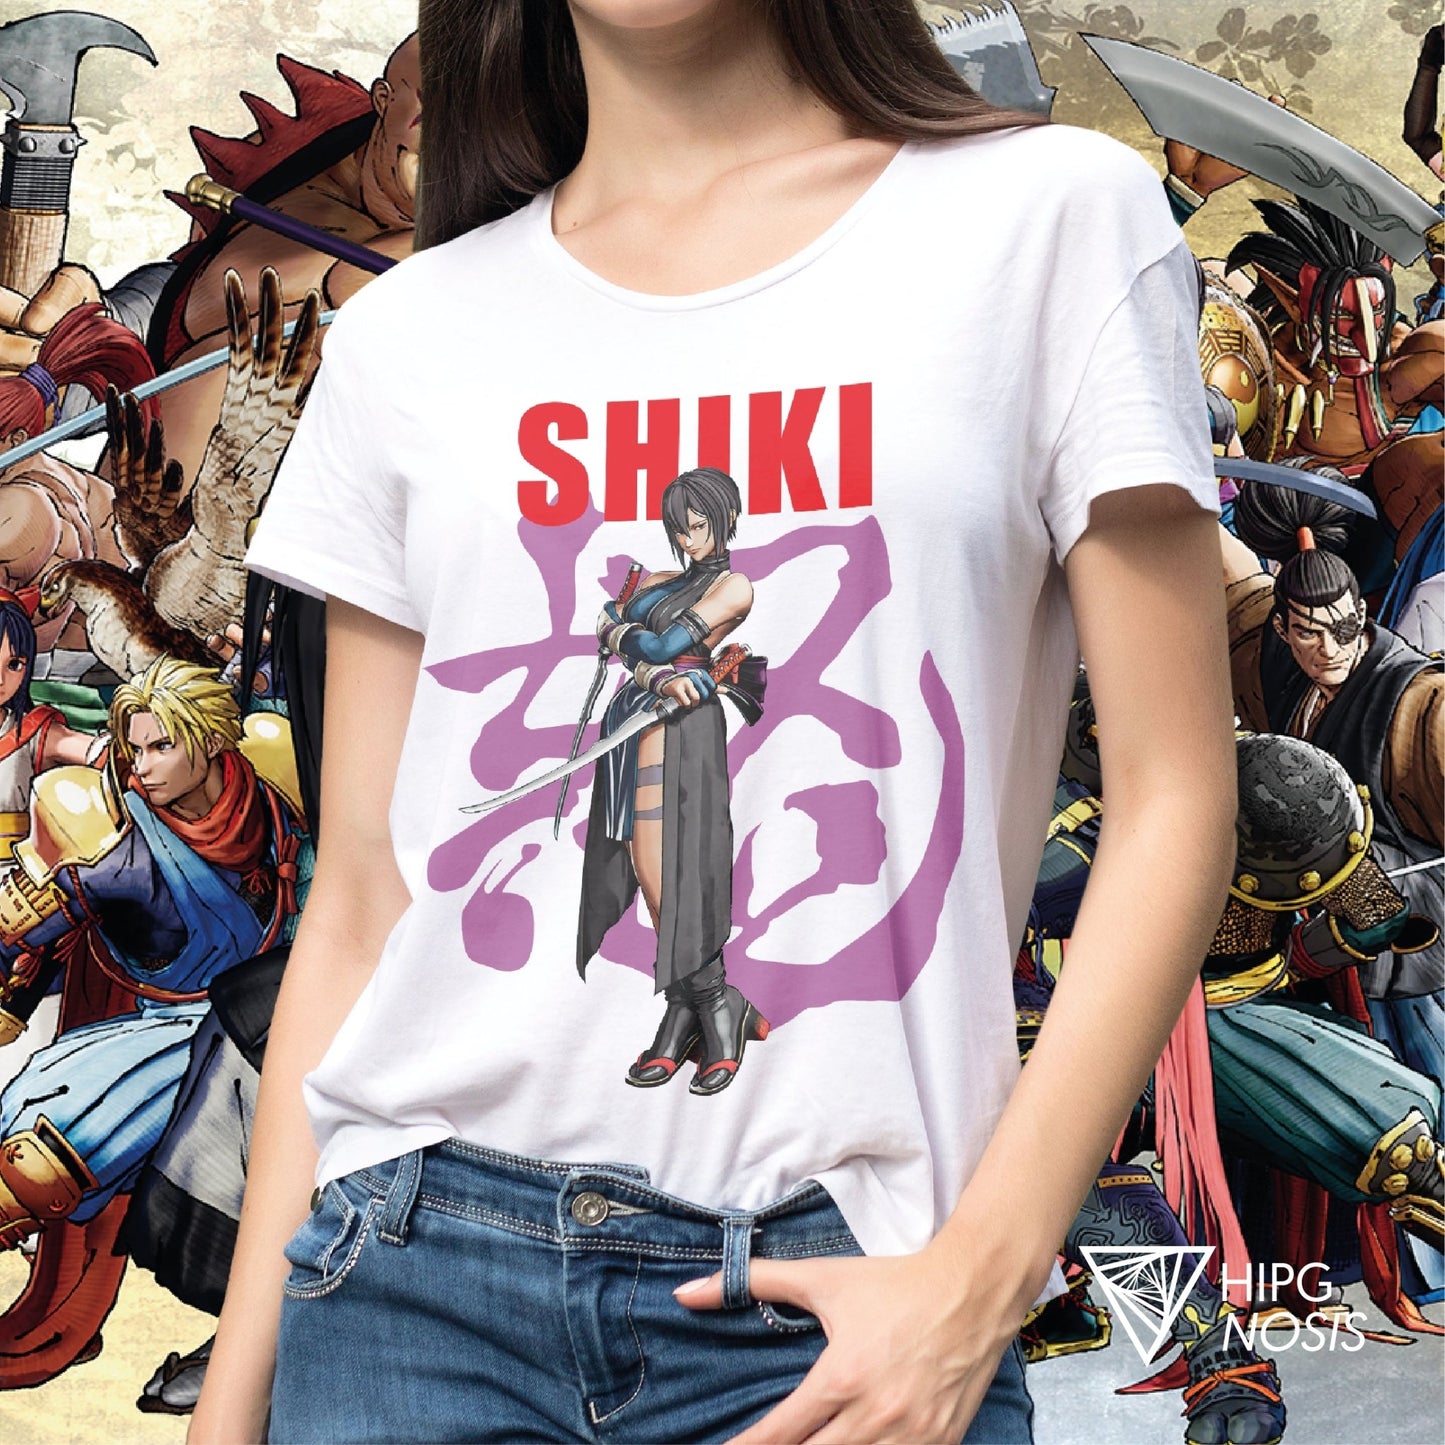 Samurai Shodow Shiki 01 - Hipgnosis